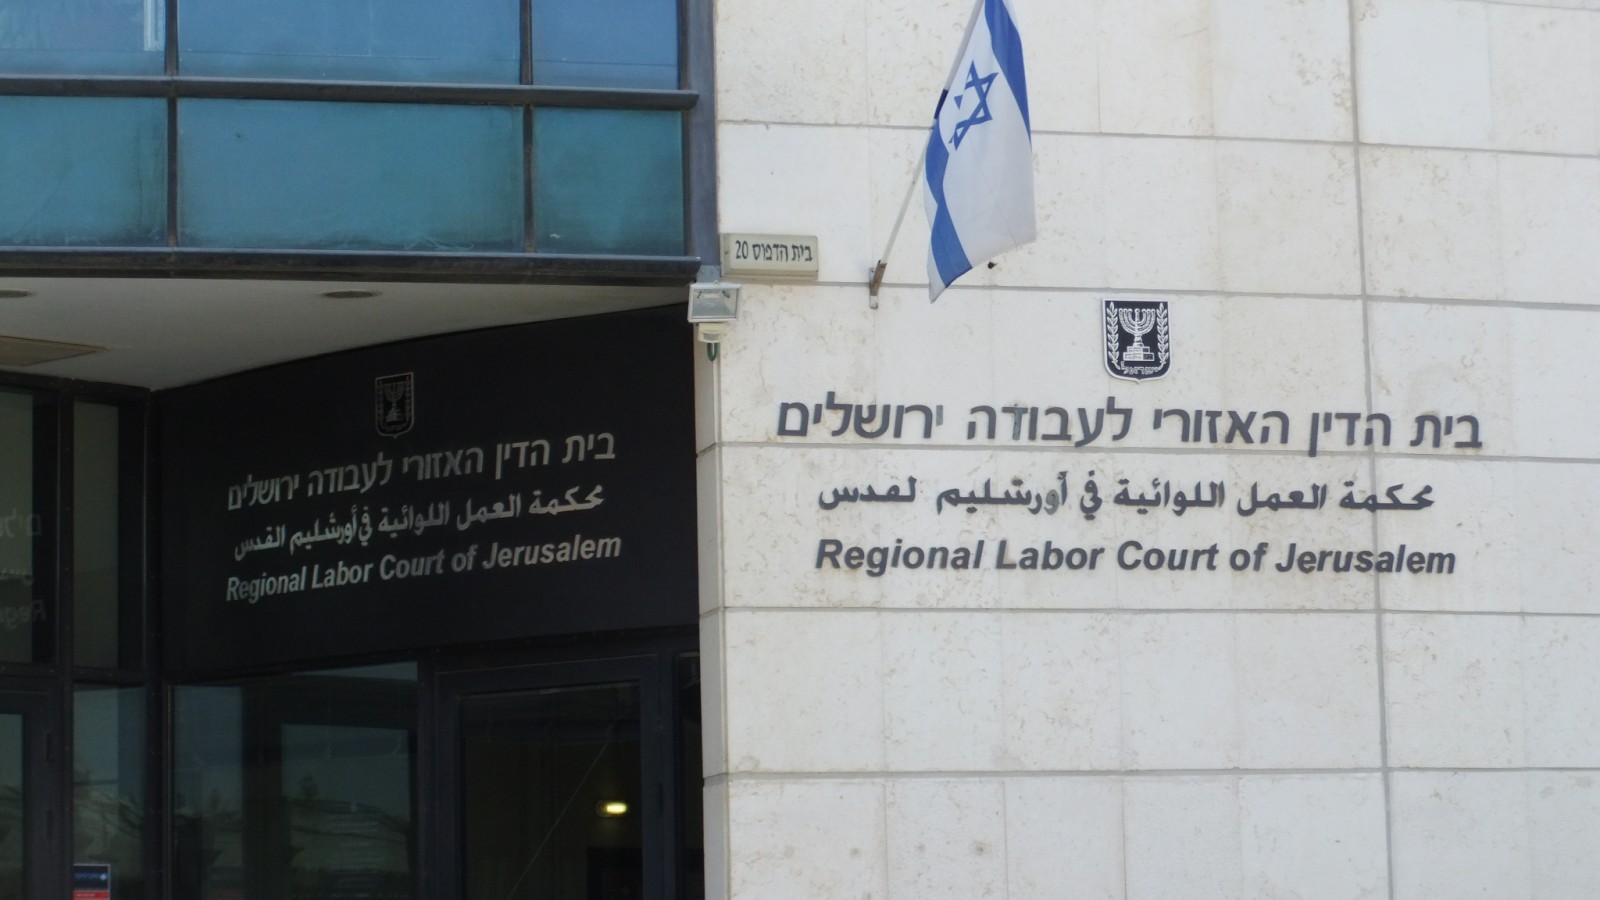 בית הדין האזורי לעבודה ירושלים (צילום: יעקב, מתוך ויקימדיה קומונס).